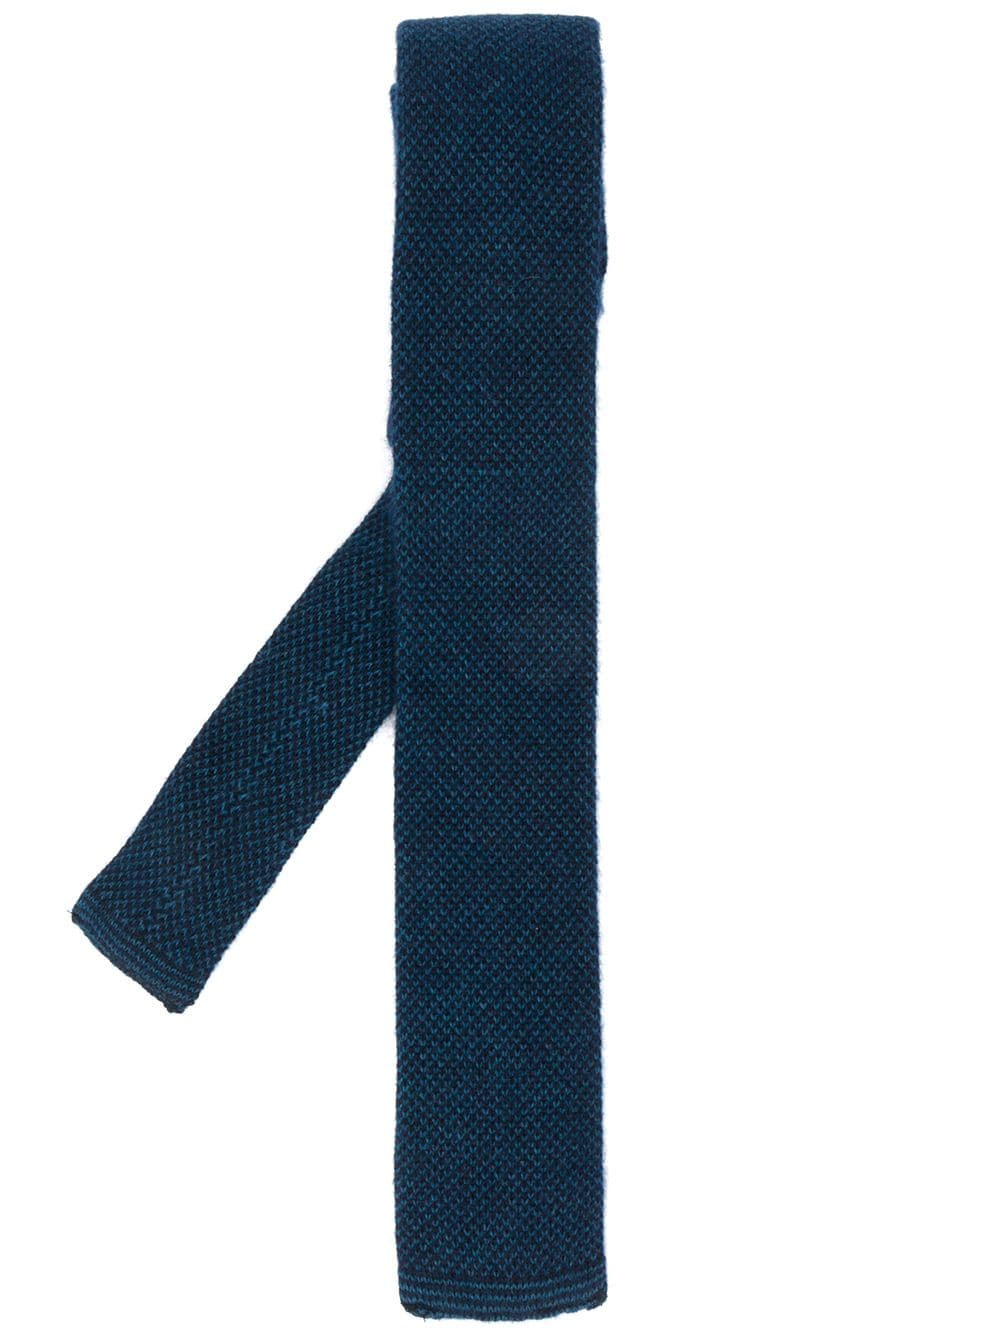 N.Peal birdseye knitted tie - Blue von N.Peal